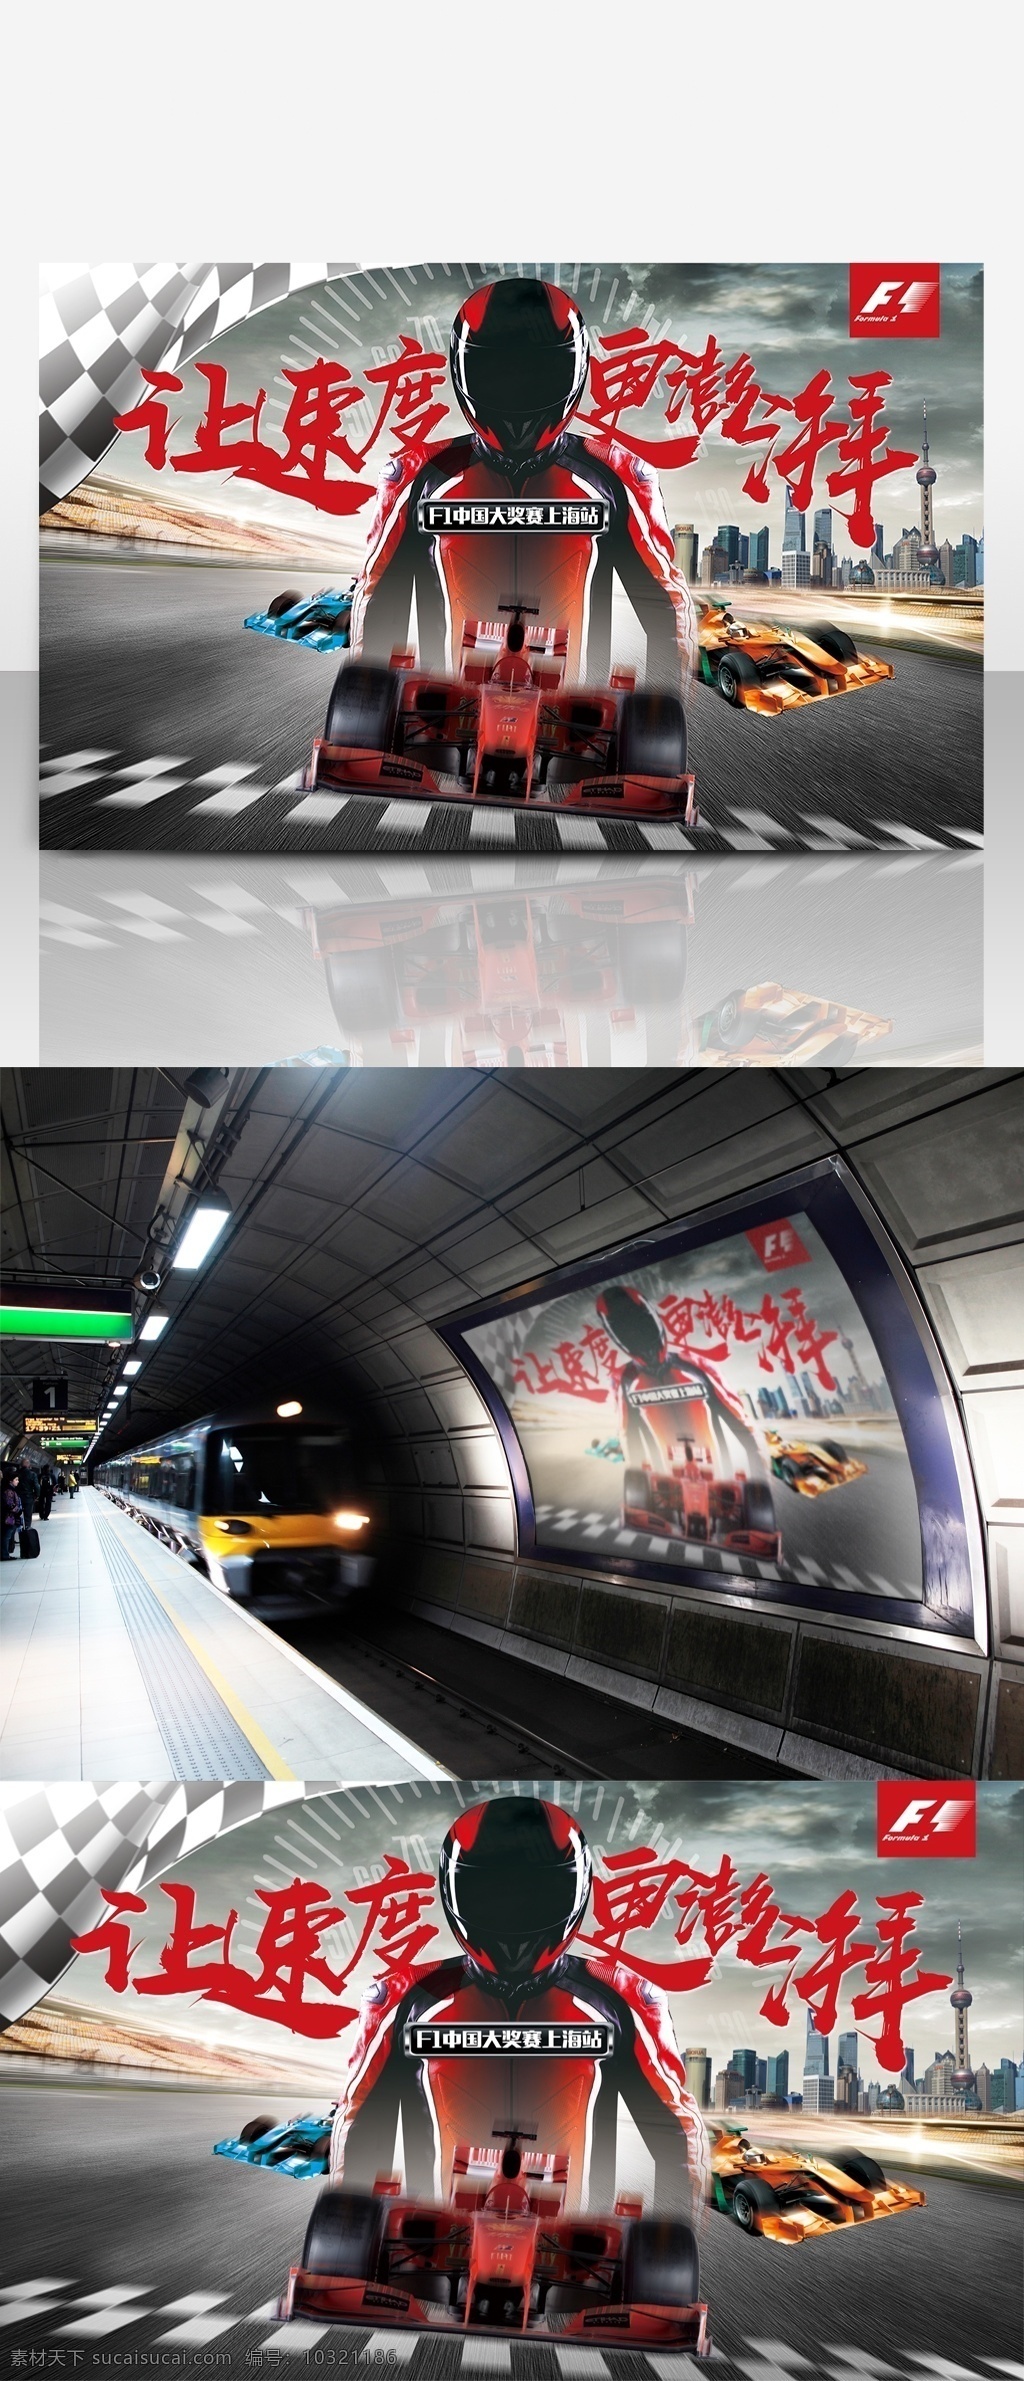 f1 赛车 中国 大奖赛 炫 酷 海报 速度与激情 跑车 赛道 炫酷 招贴 展板 上海f1大赛